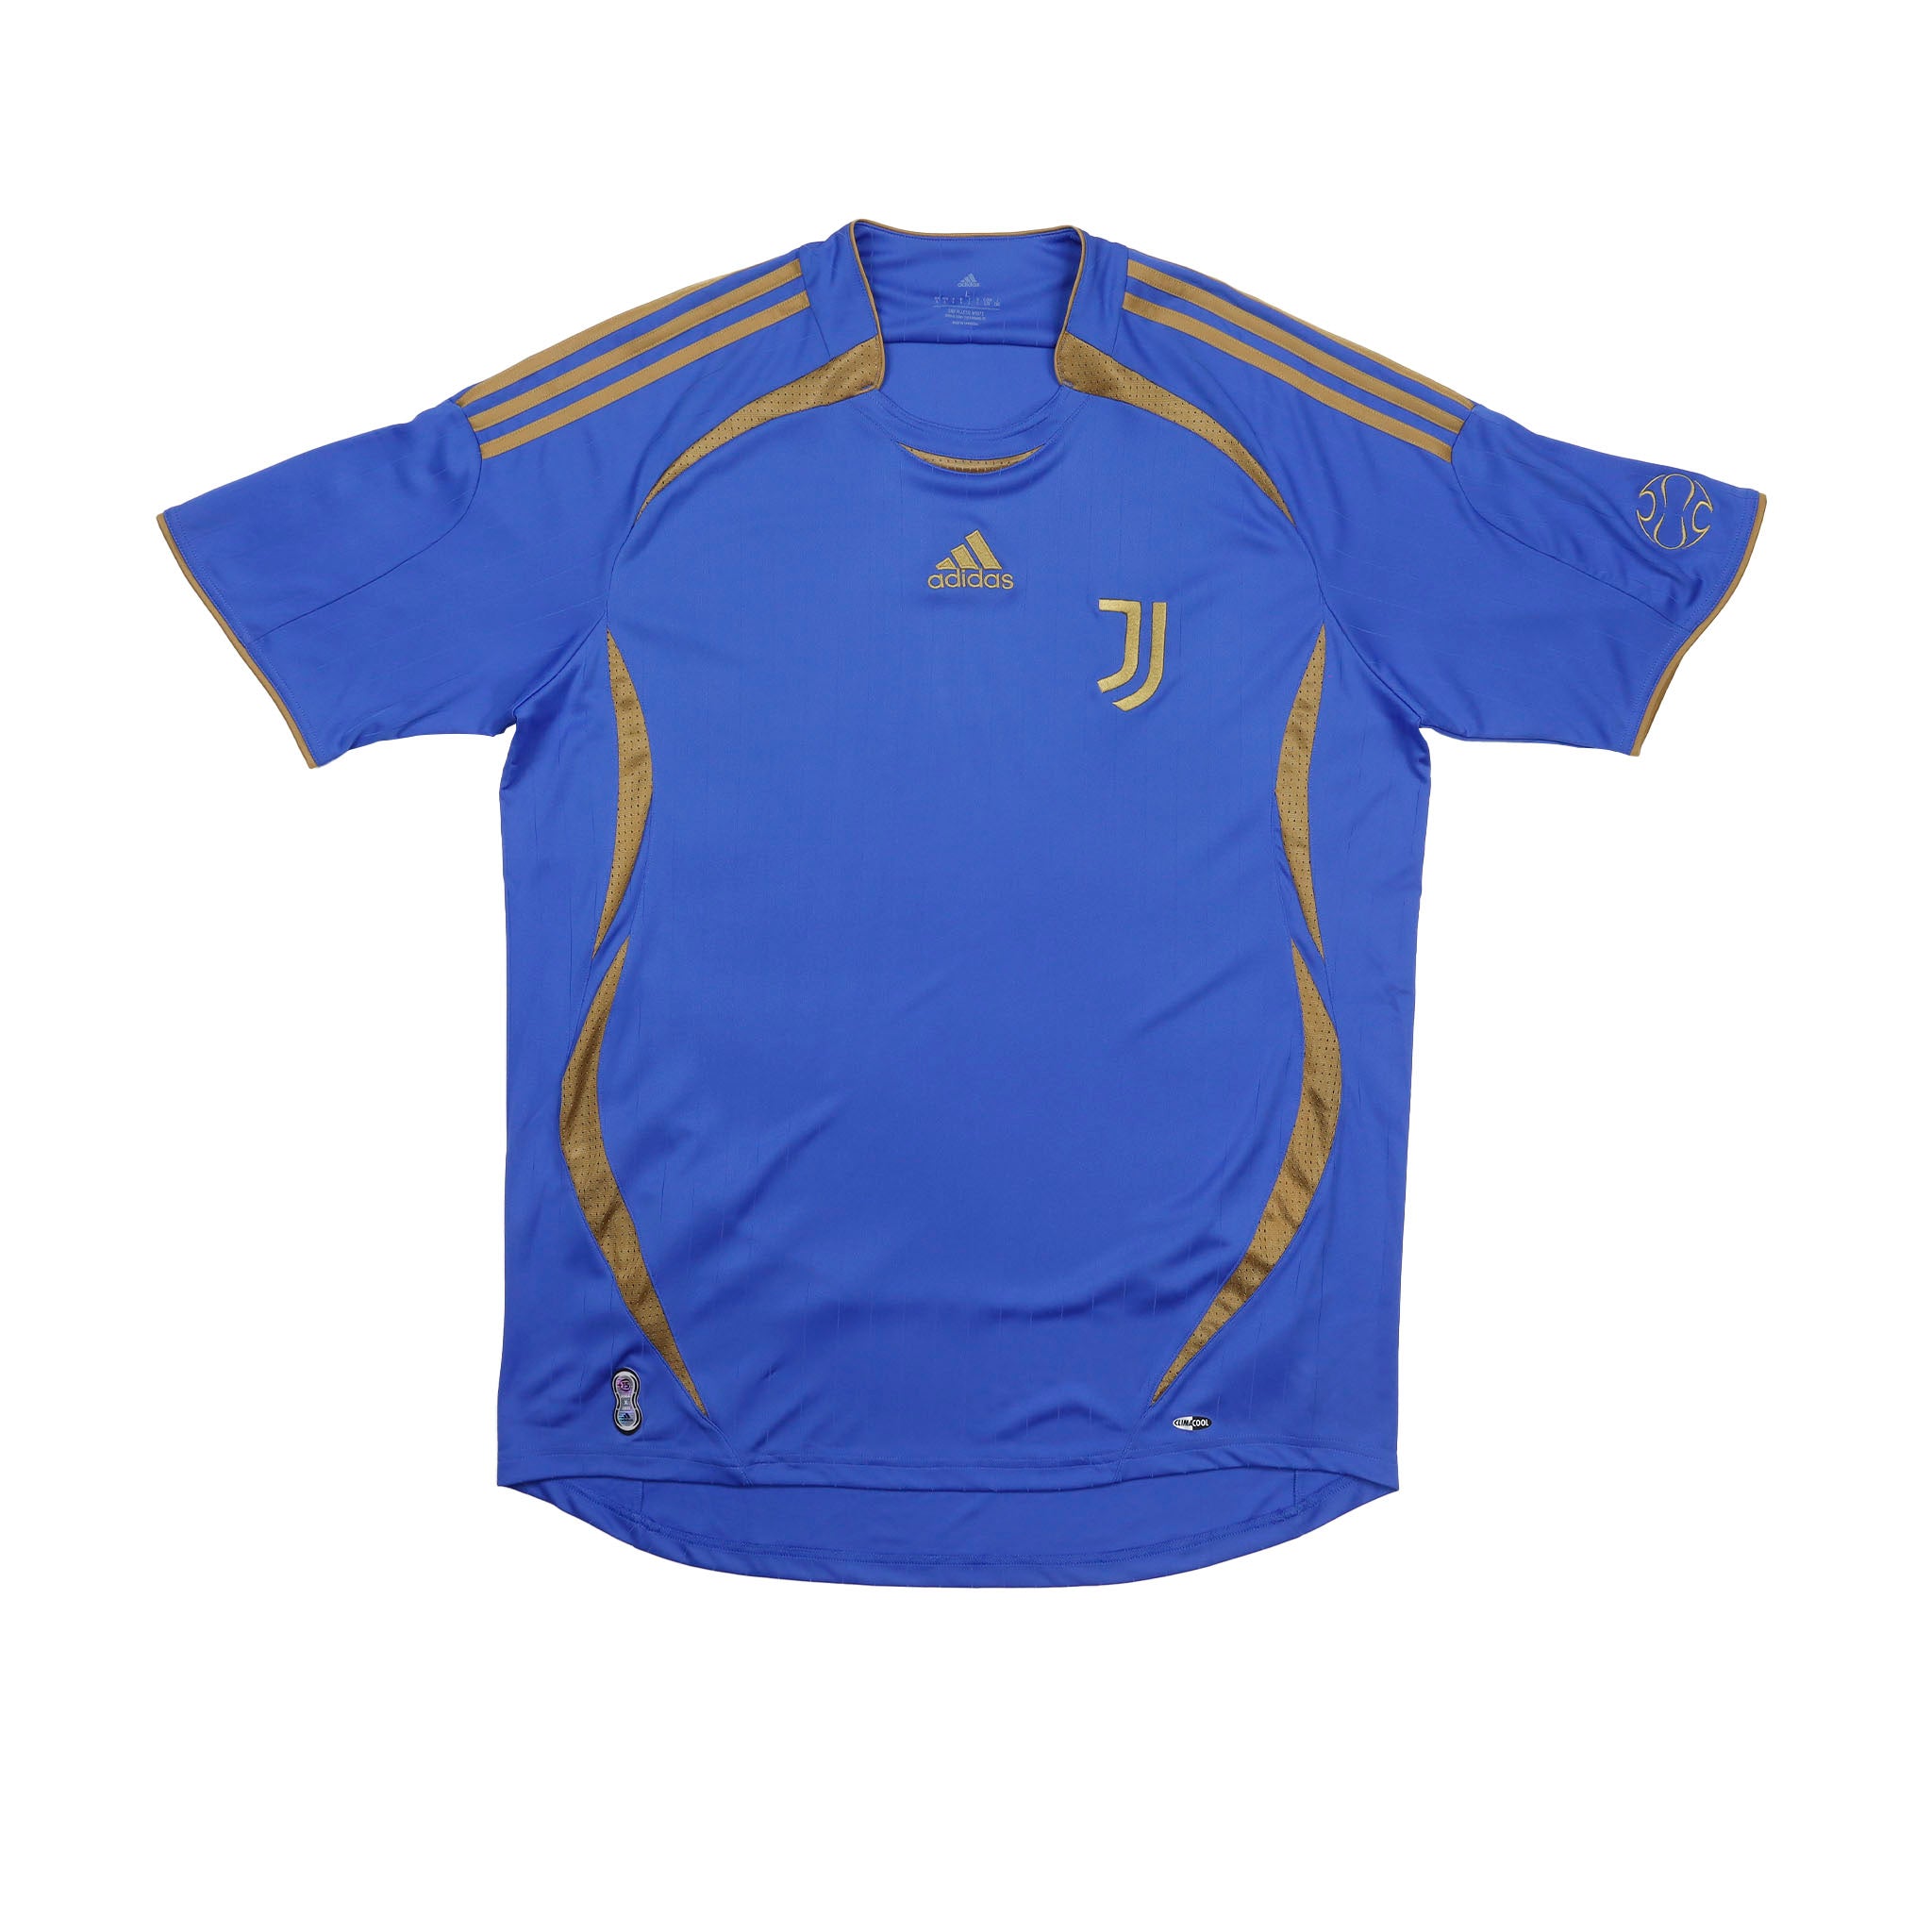 Jersey Adidas Juventus Teamgeist